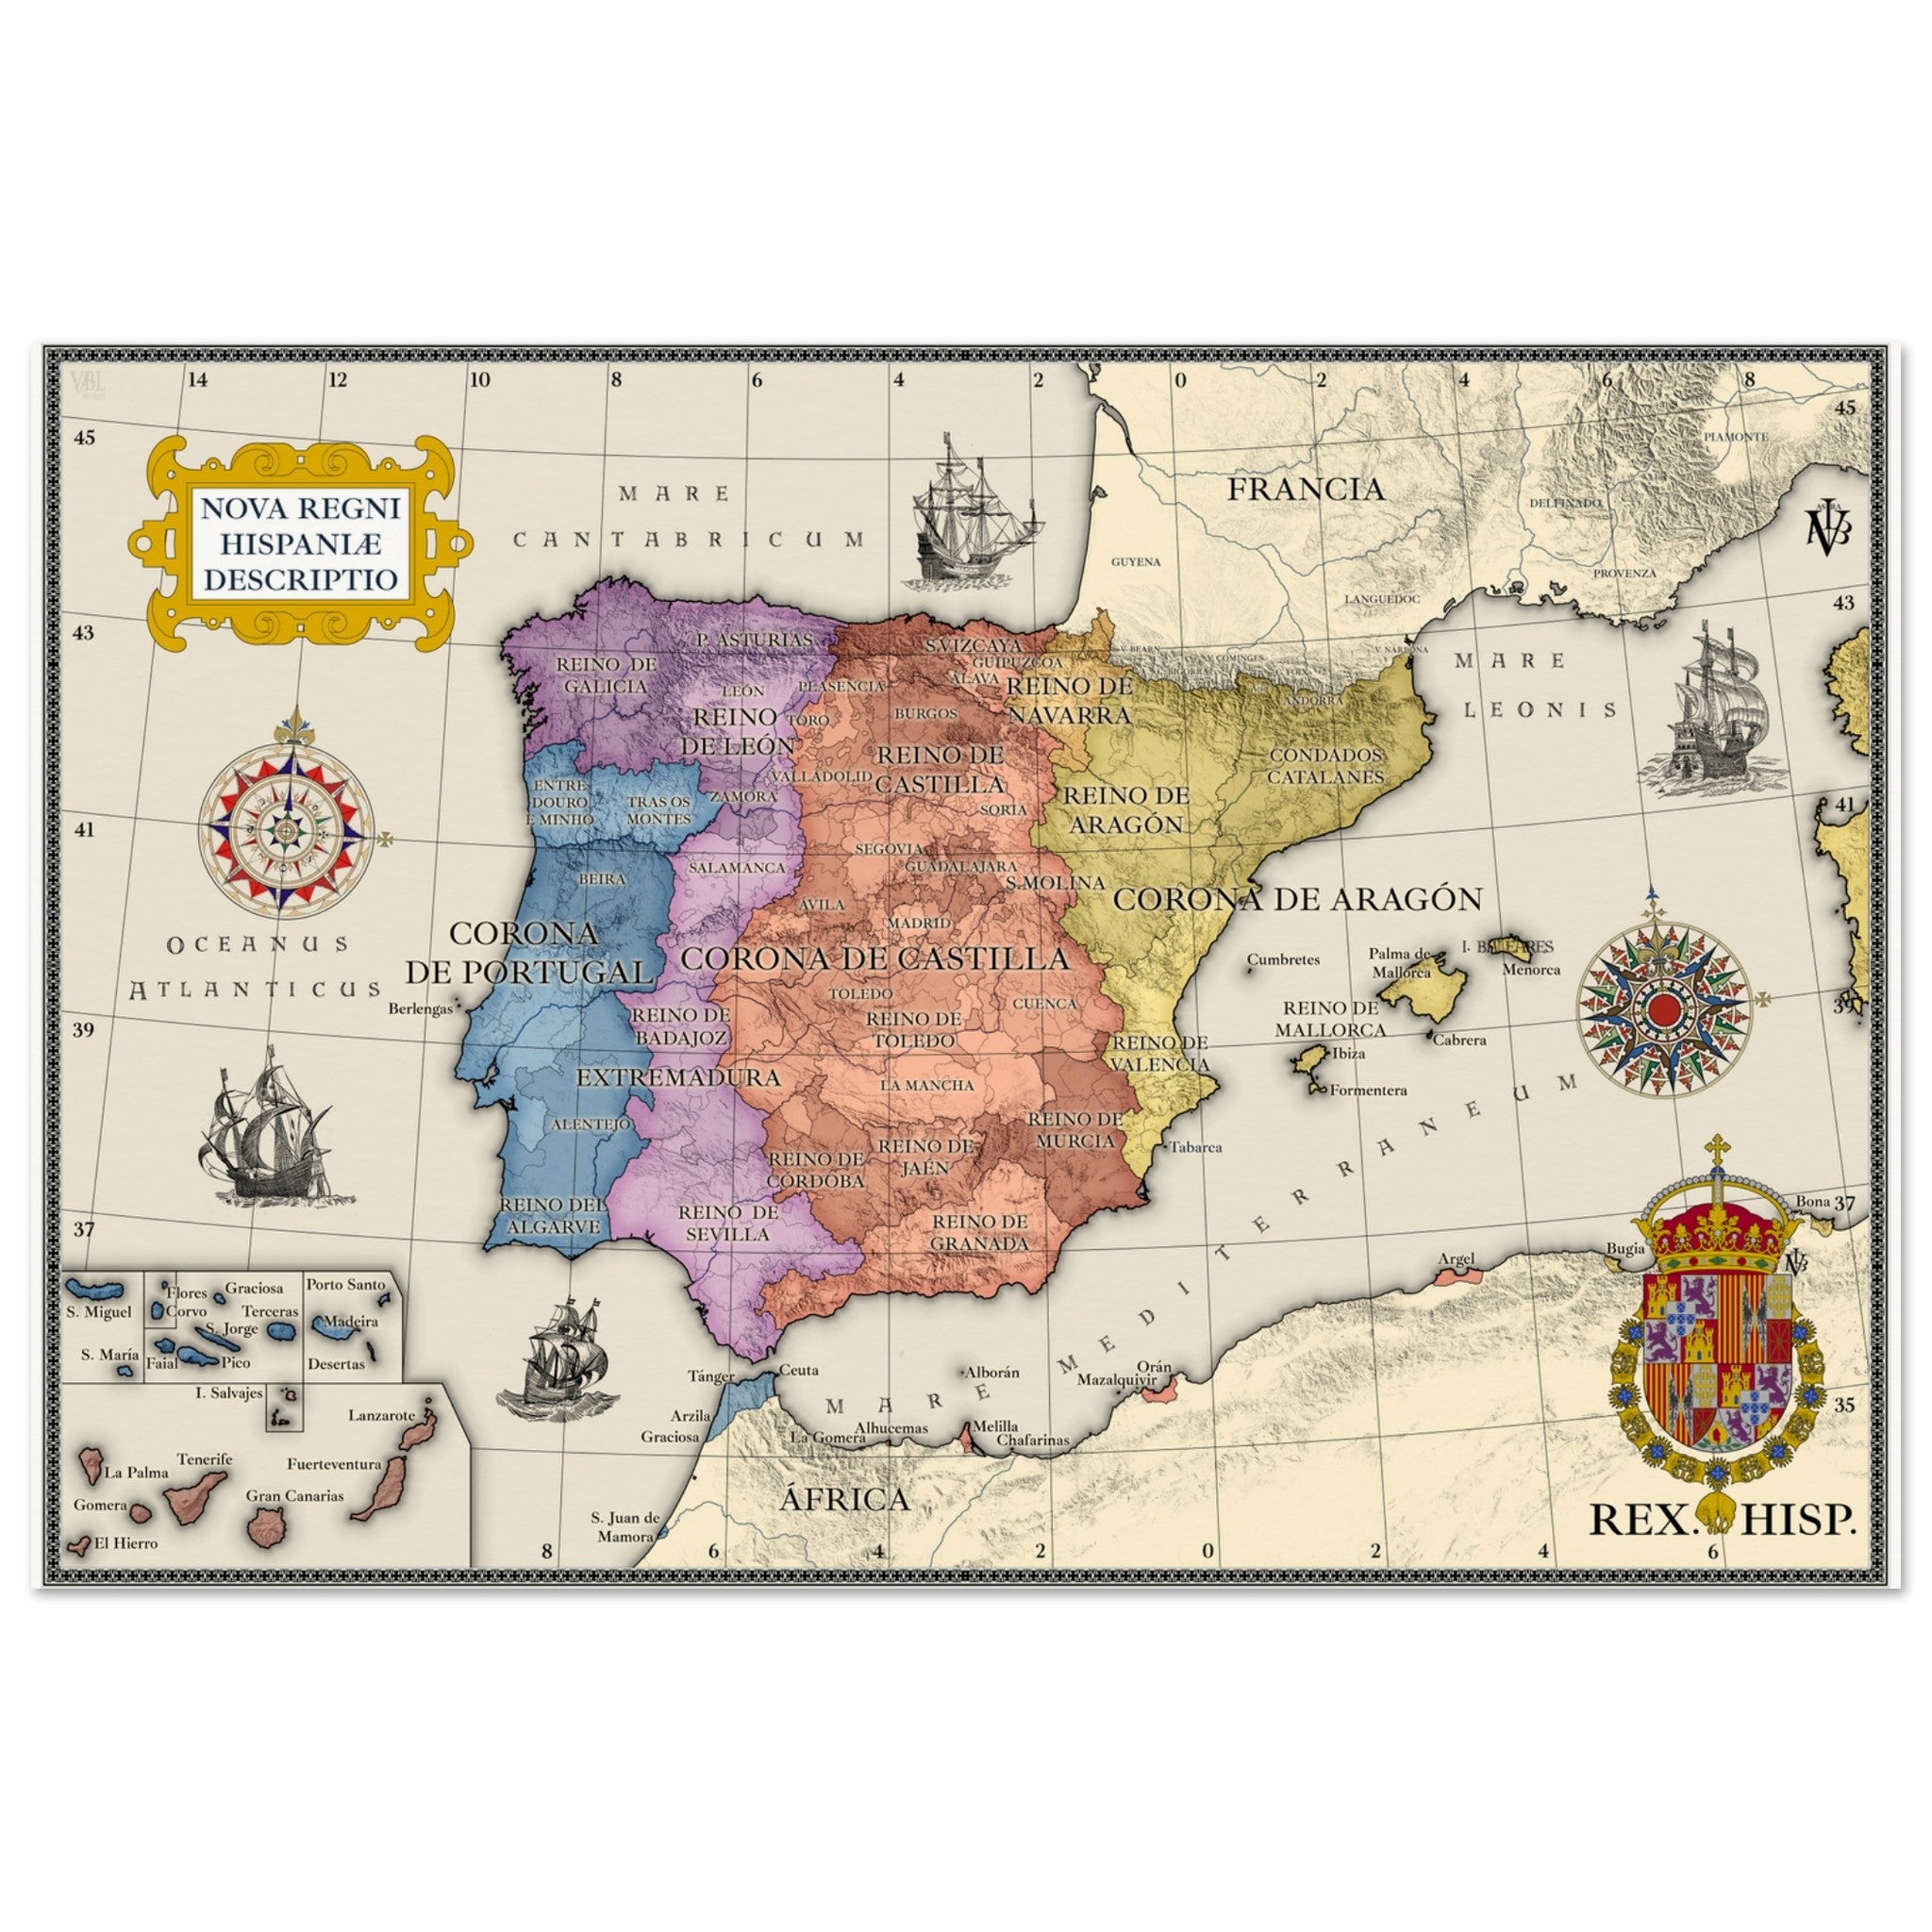 Descrição de Nova Regni Hispaniae